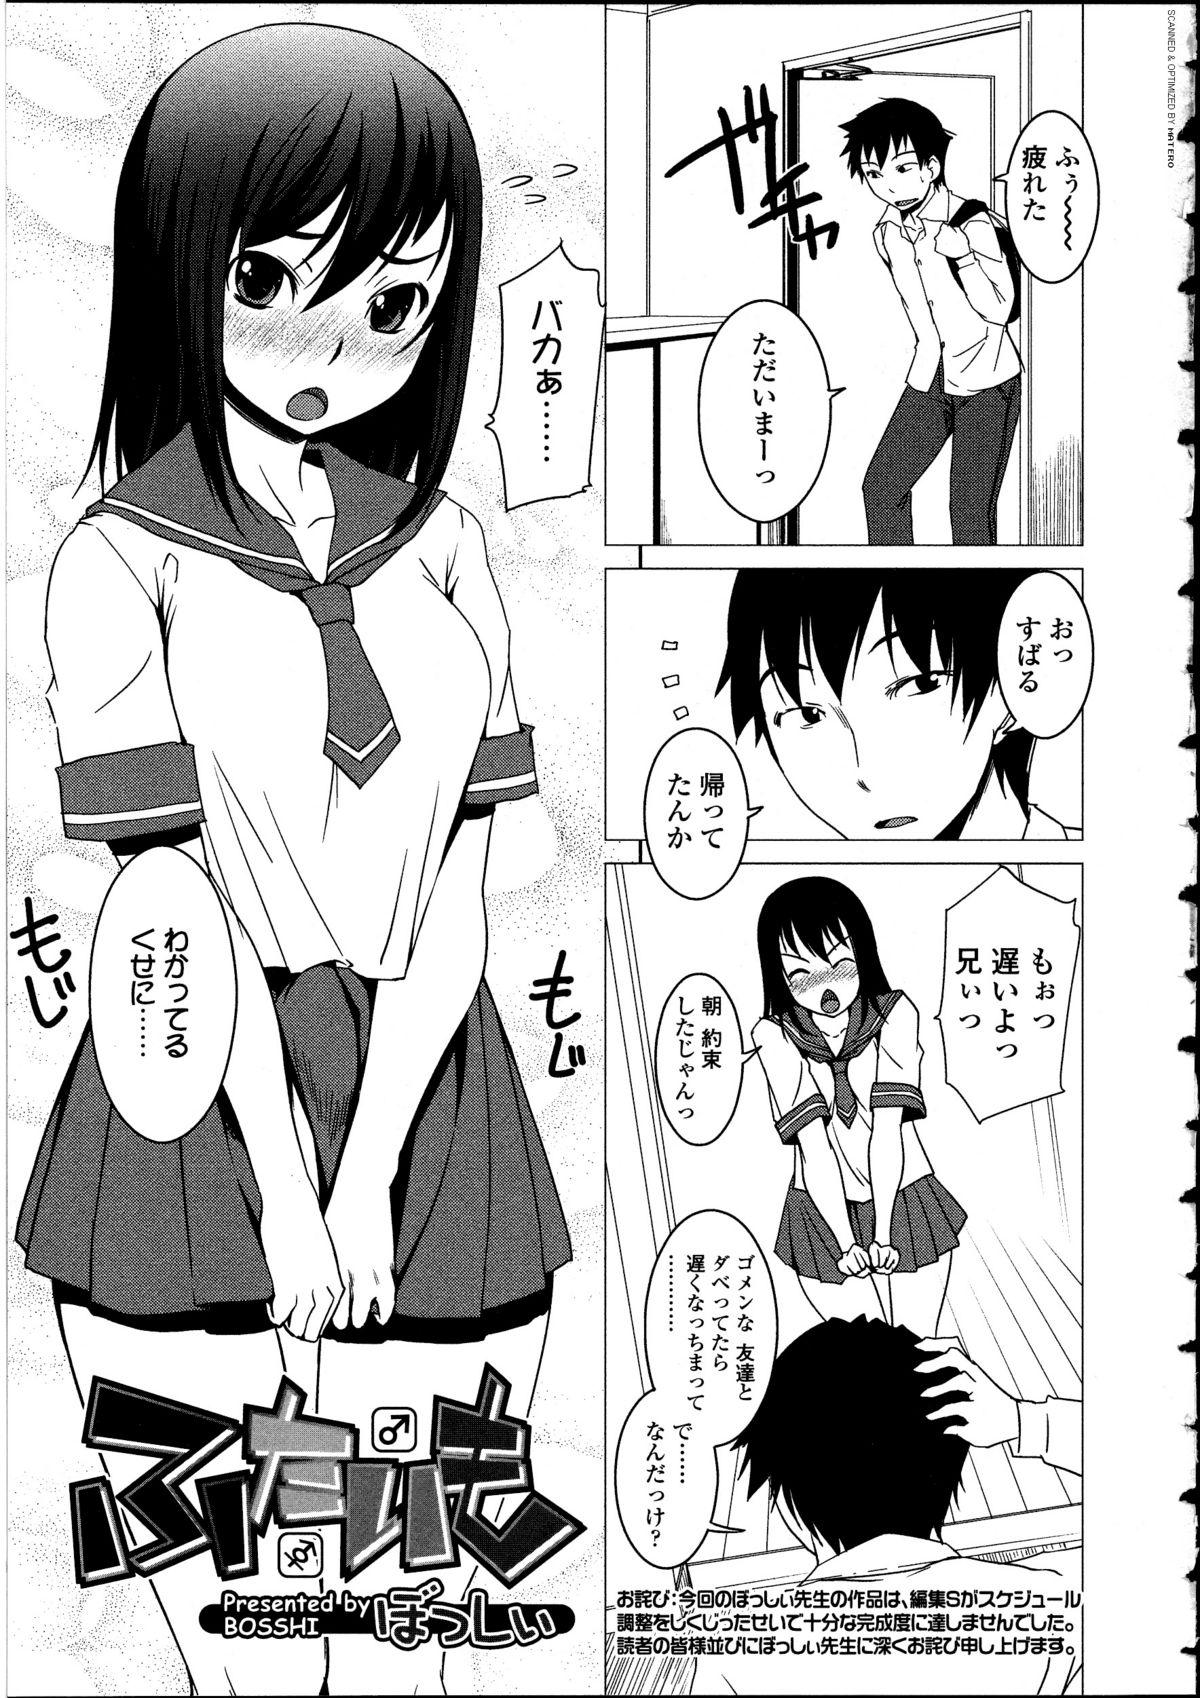 Teenager Futanarikko LOVE 12 Funny - Page 5